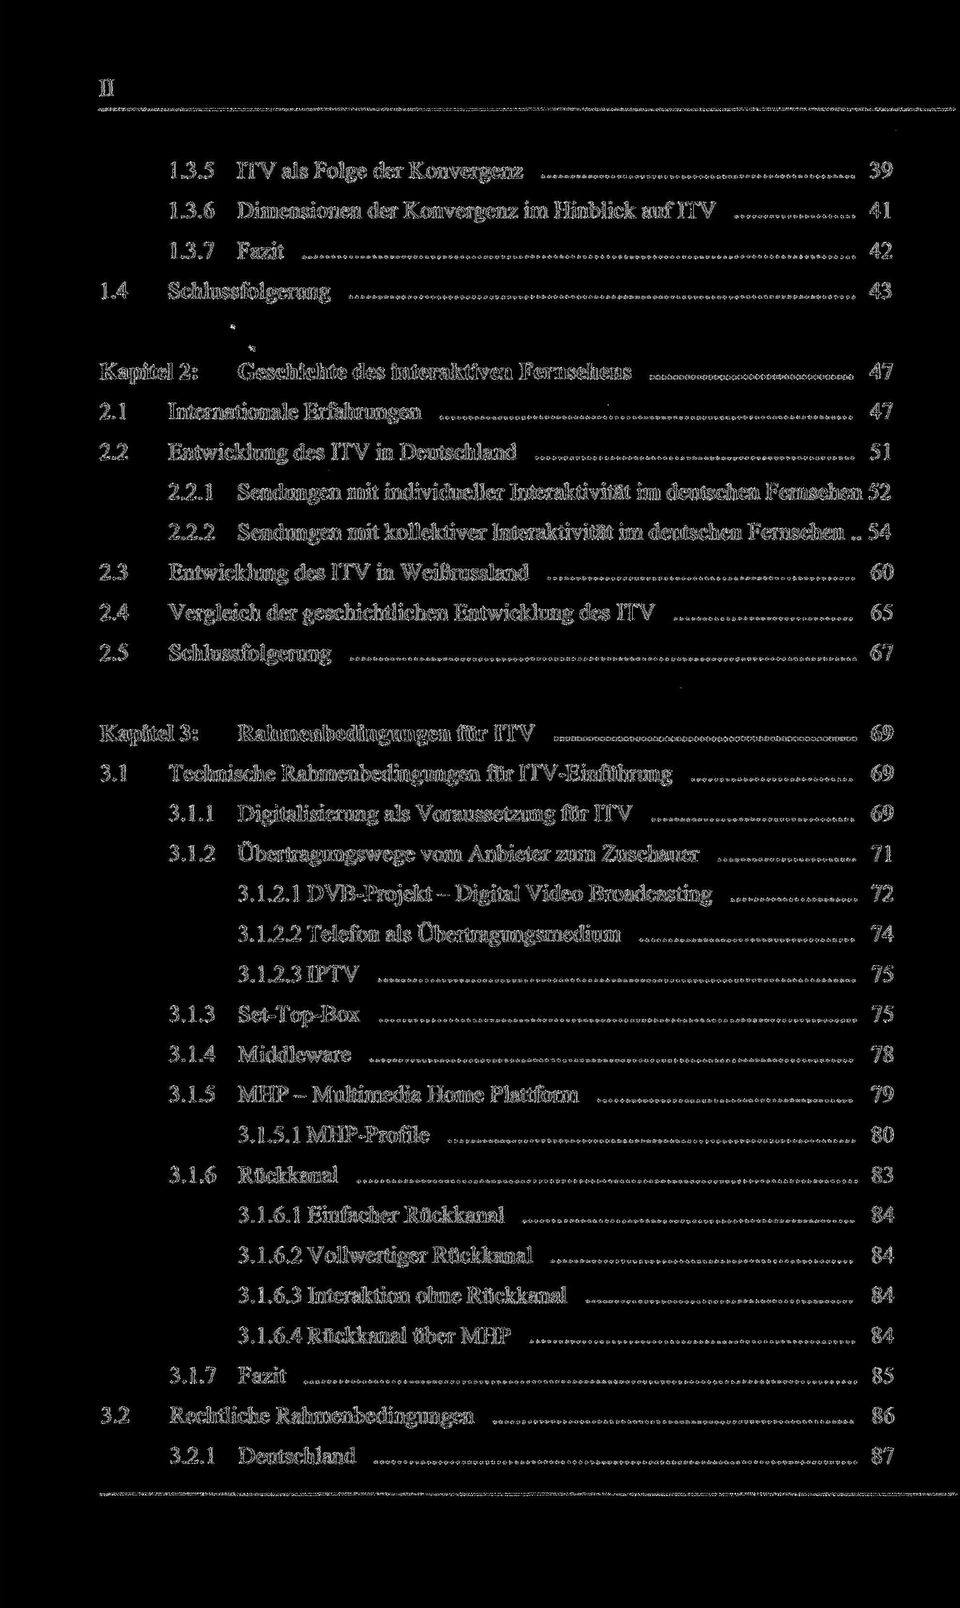 . 54 2.3 Entwicklung des ITV in Weißrussland 60 2.4 Vergleich der geschichtlichen Entwicklung des ITV 65 2.5 Schlussfolgerung 67 Kapitel 3: Rahmenbedingungen für ITV 69 3.